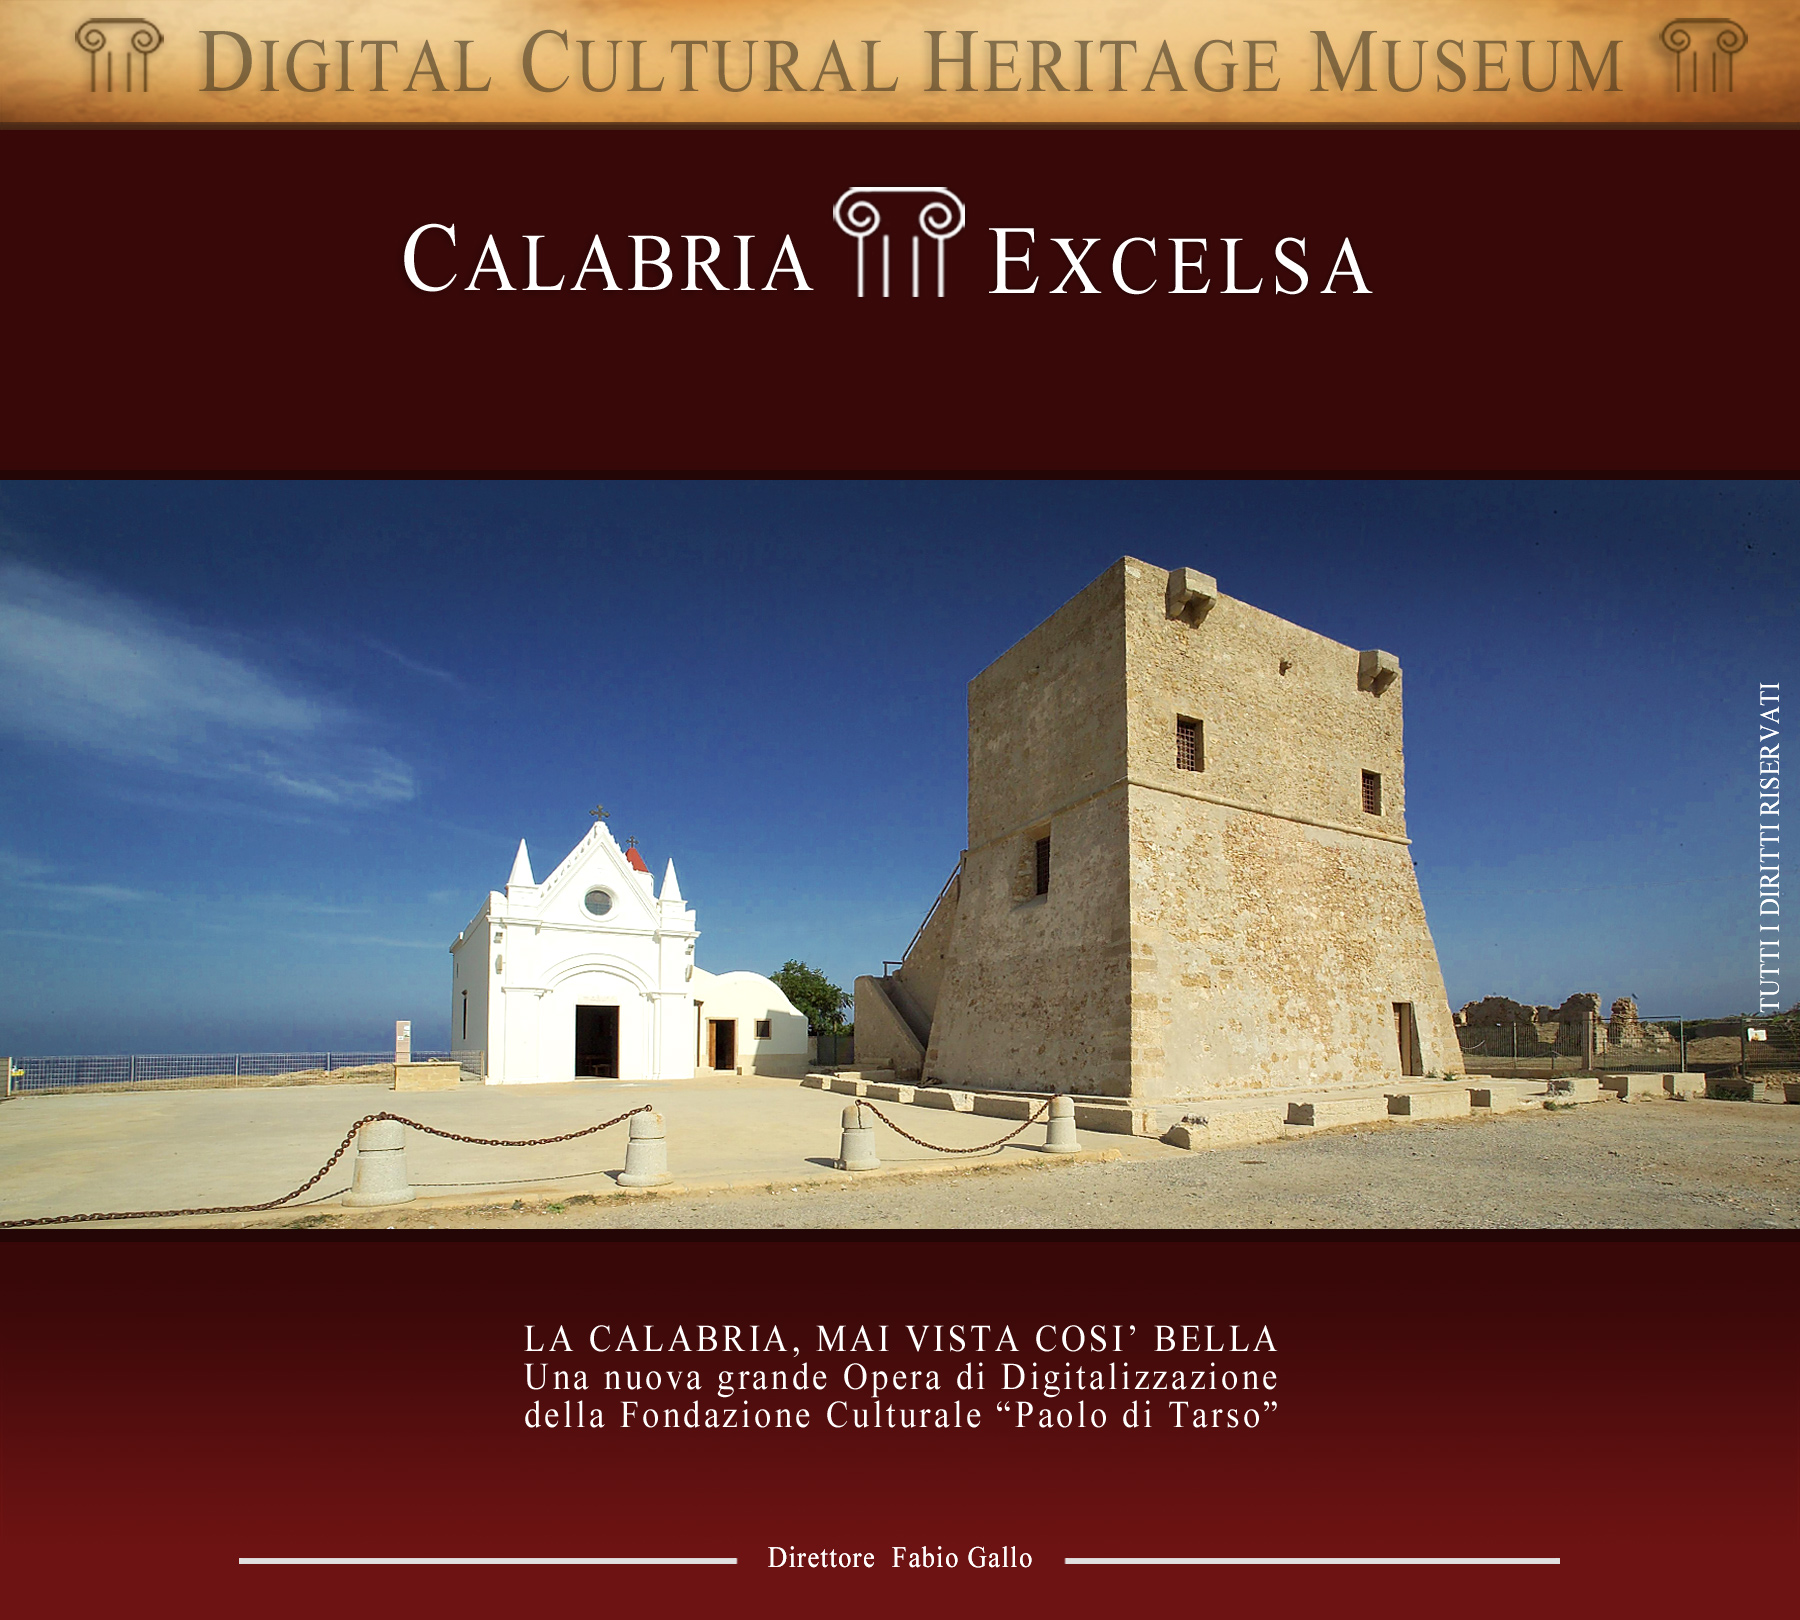 Calabria Excelsa-archeologia-arte-mare-monti-laghiturismo-fotografia-cinema-teato-food-wine-vino-dieta mediterranea